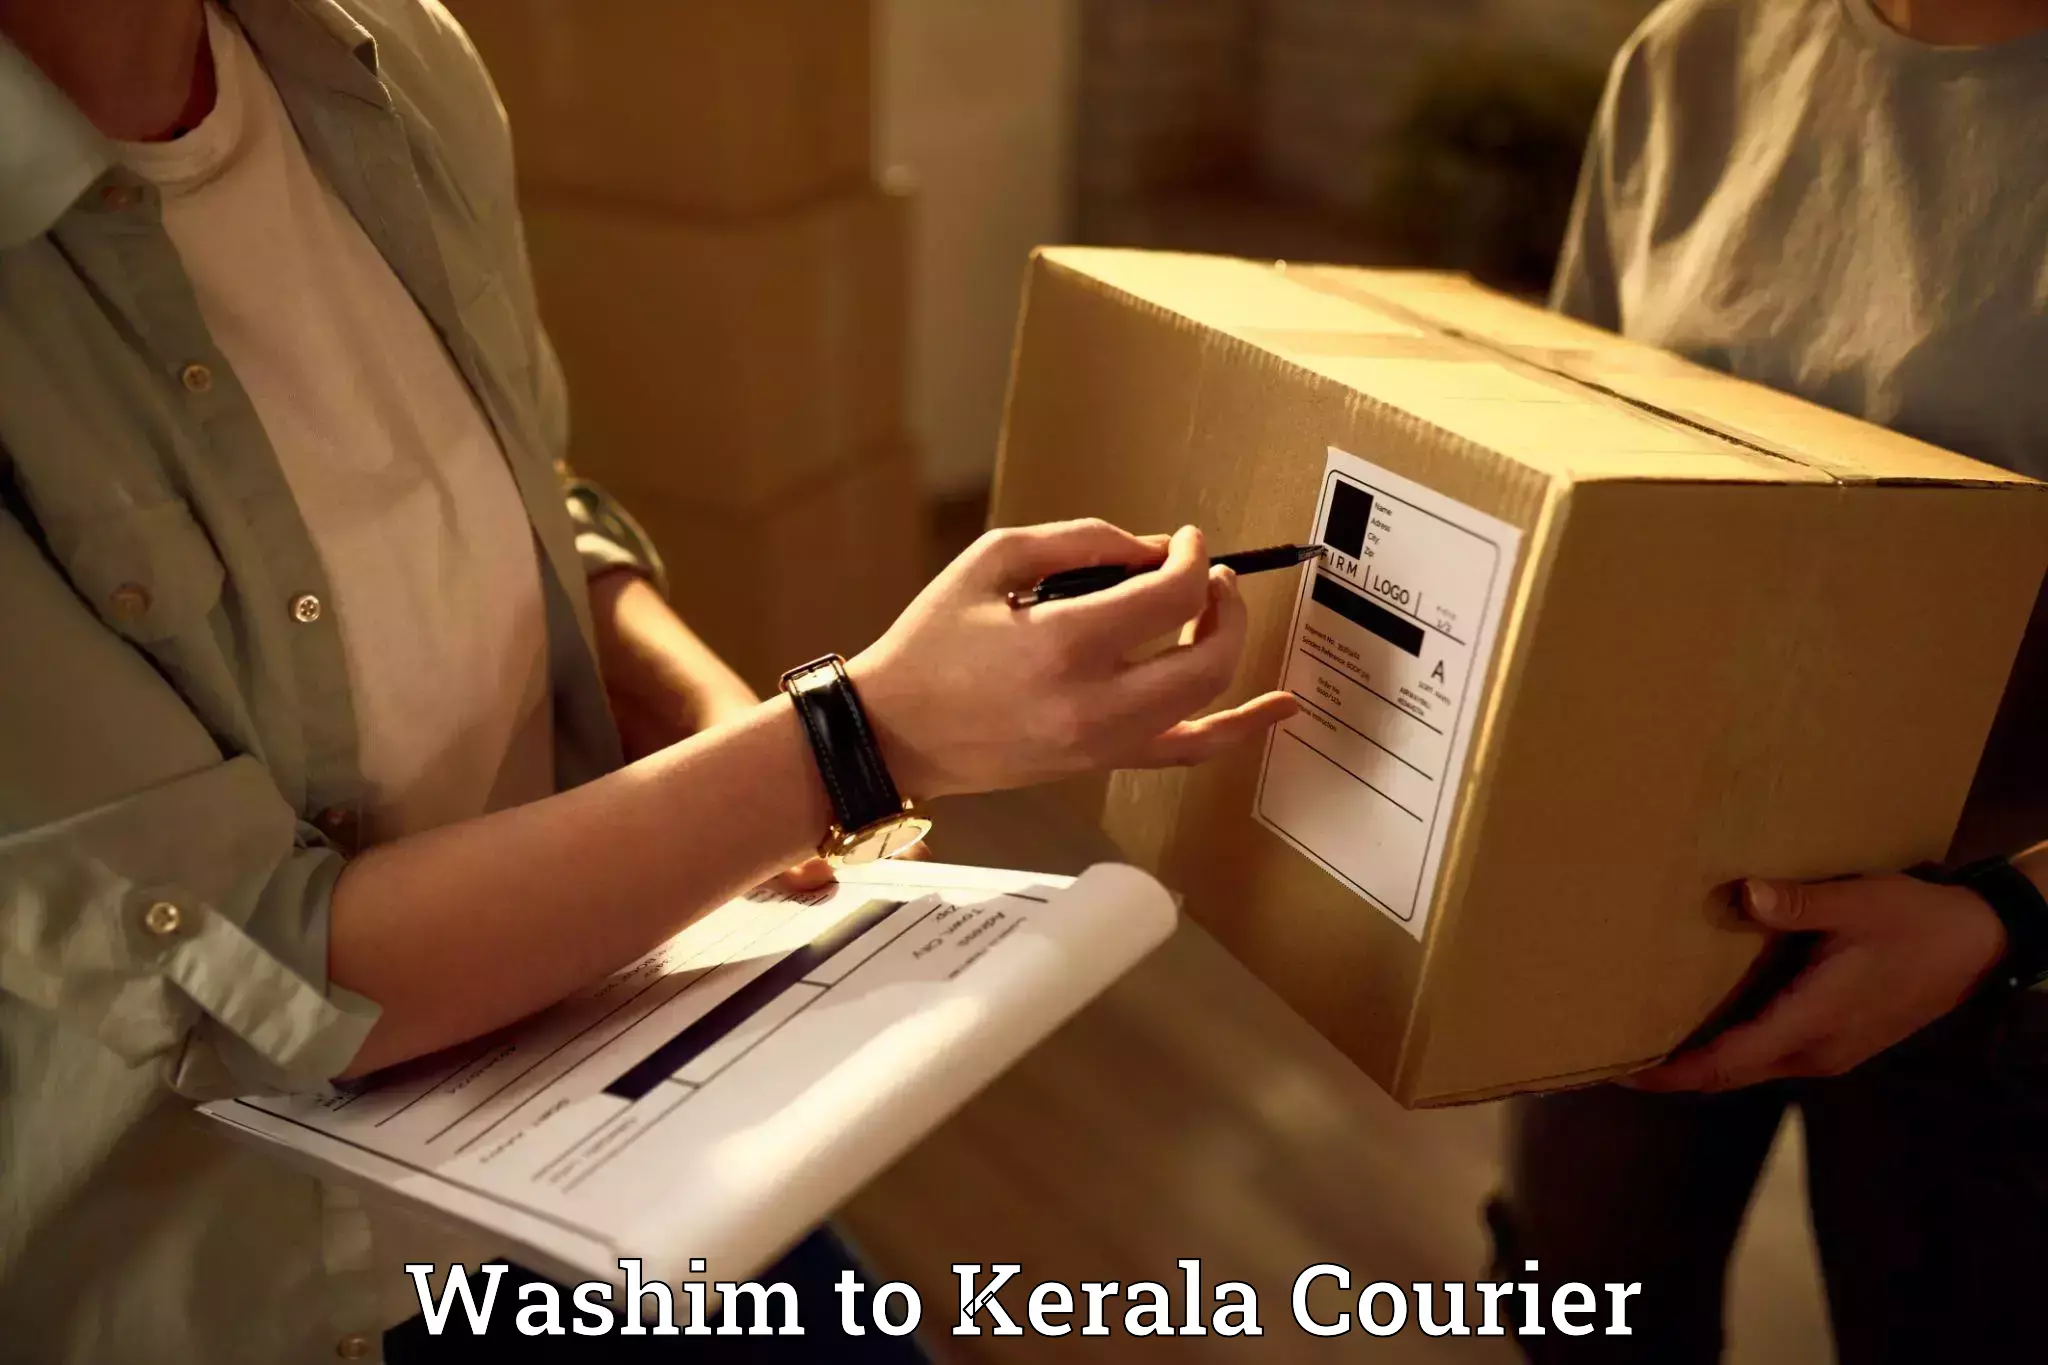 Professional packing services Washim to Mundakayam